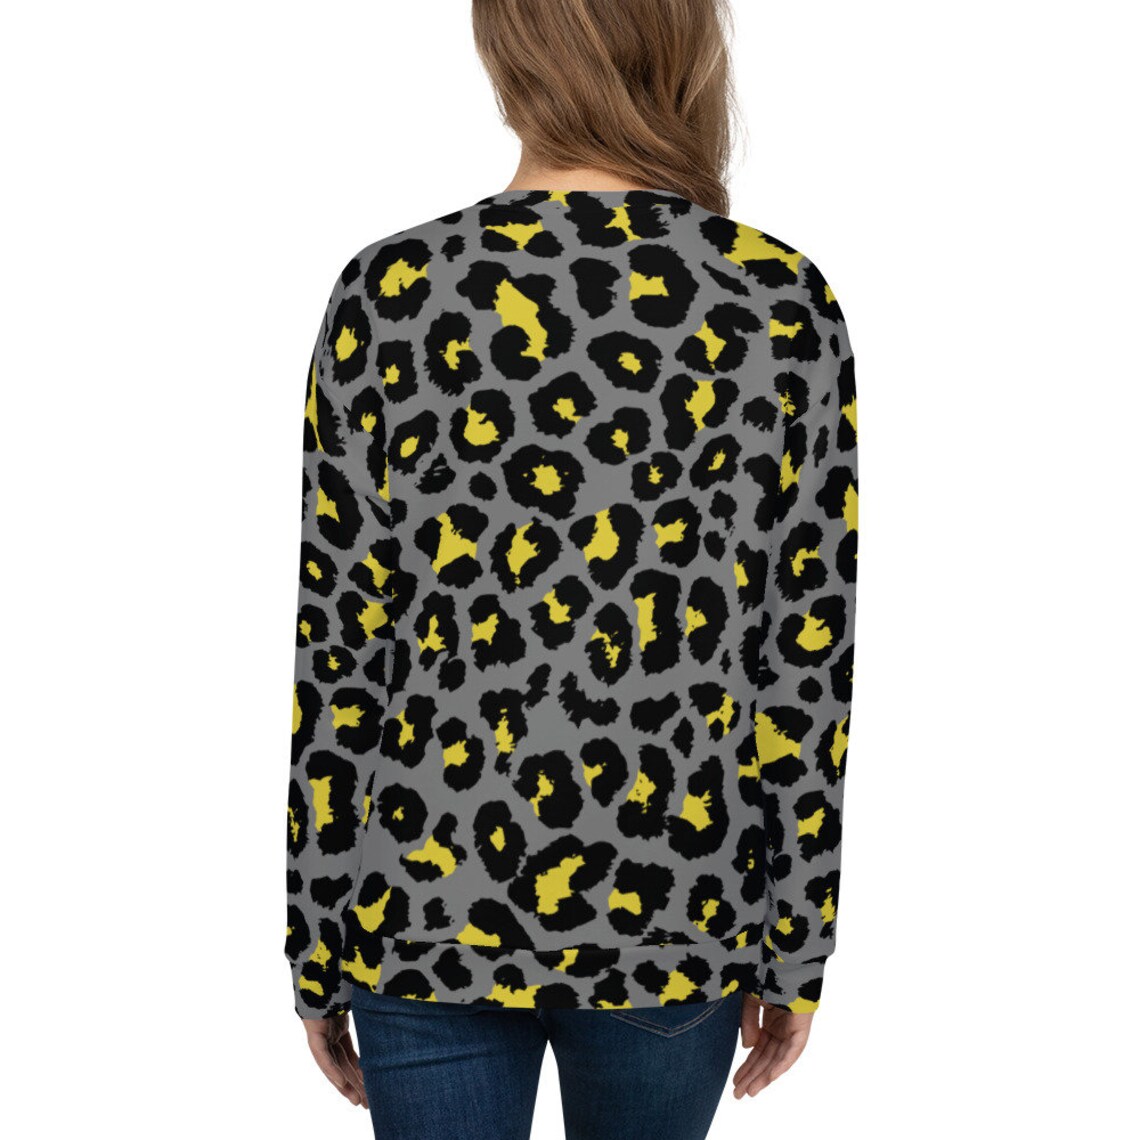 Leopard Print Women's Sweatshirt | Etsy